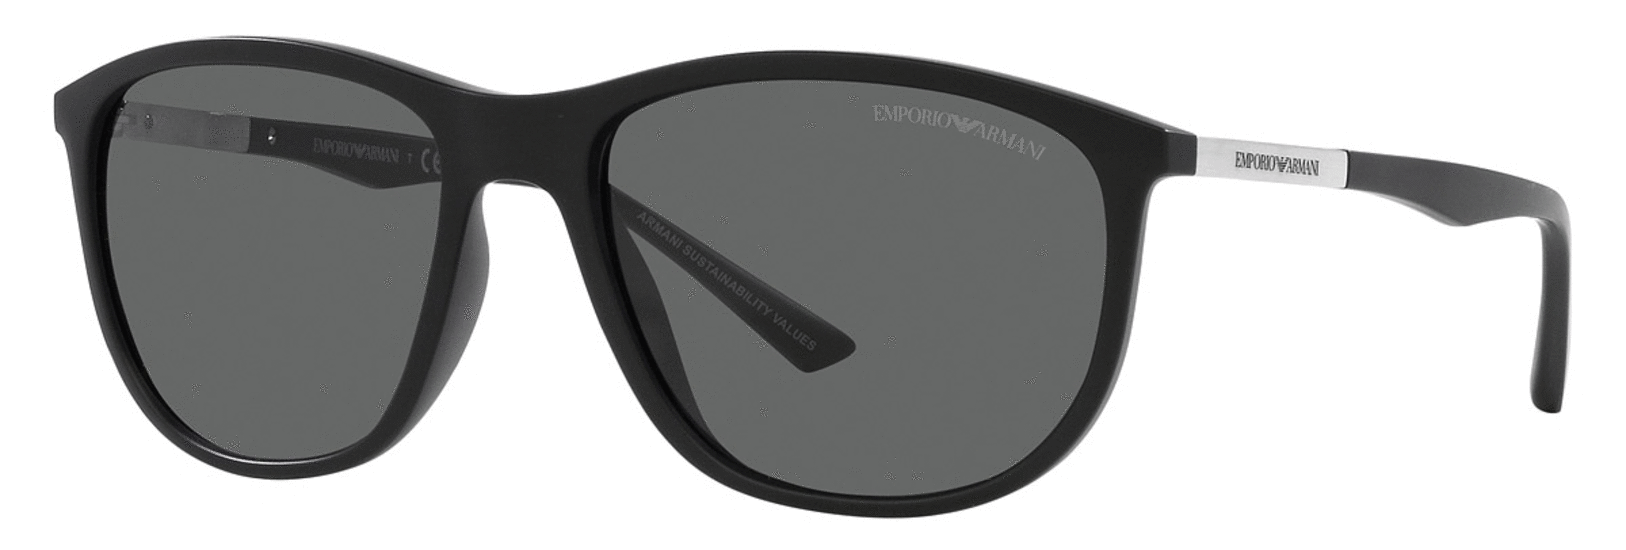 Emporio Armani Men’s Pillow Sunglasses EA4201 500187